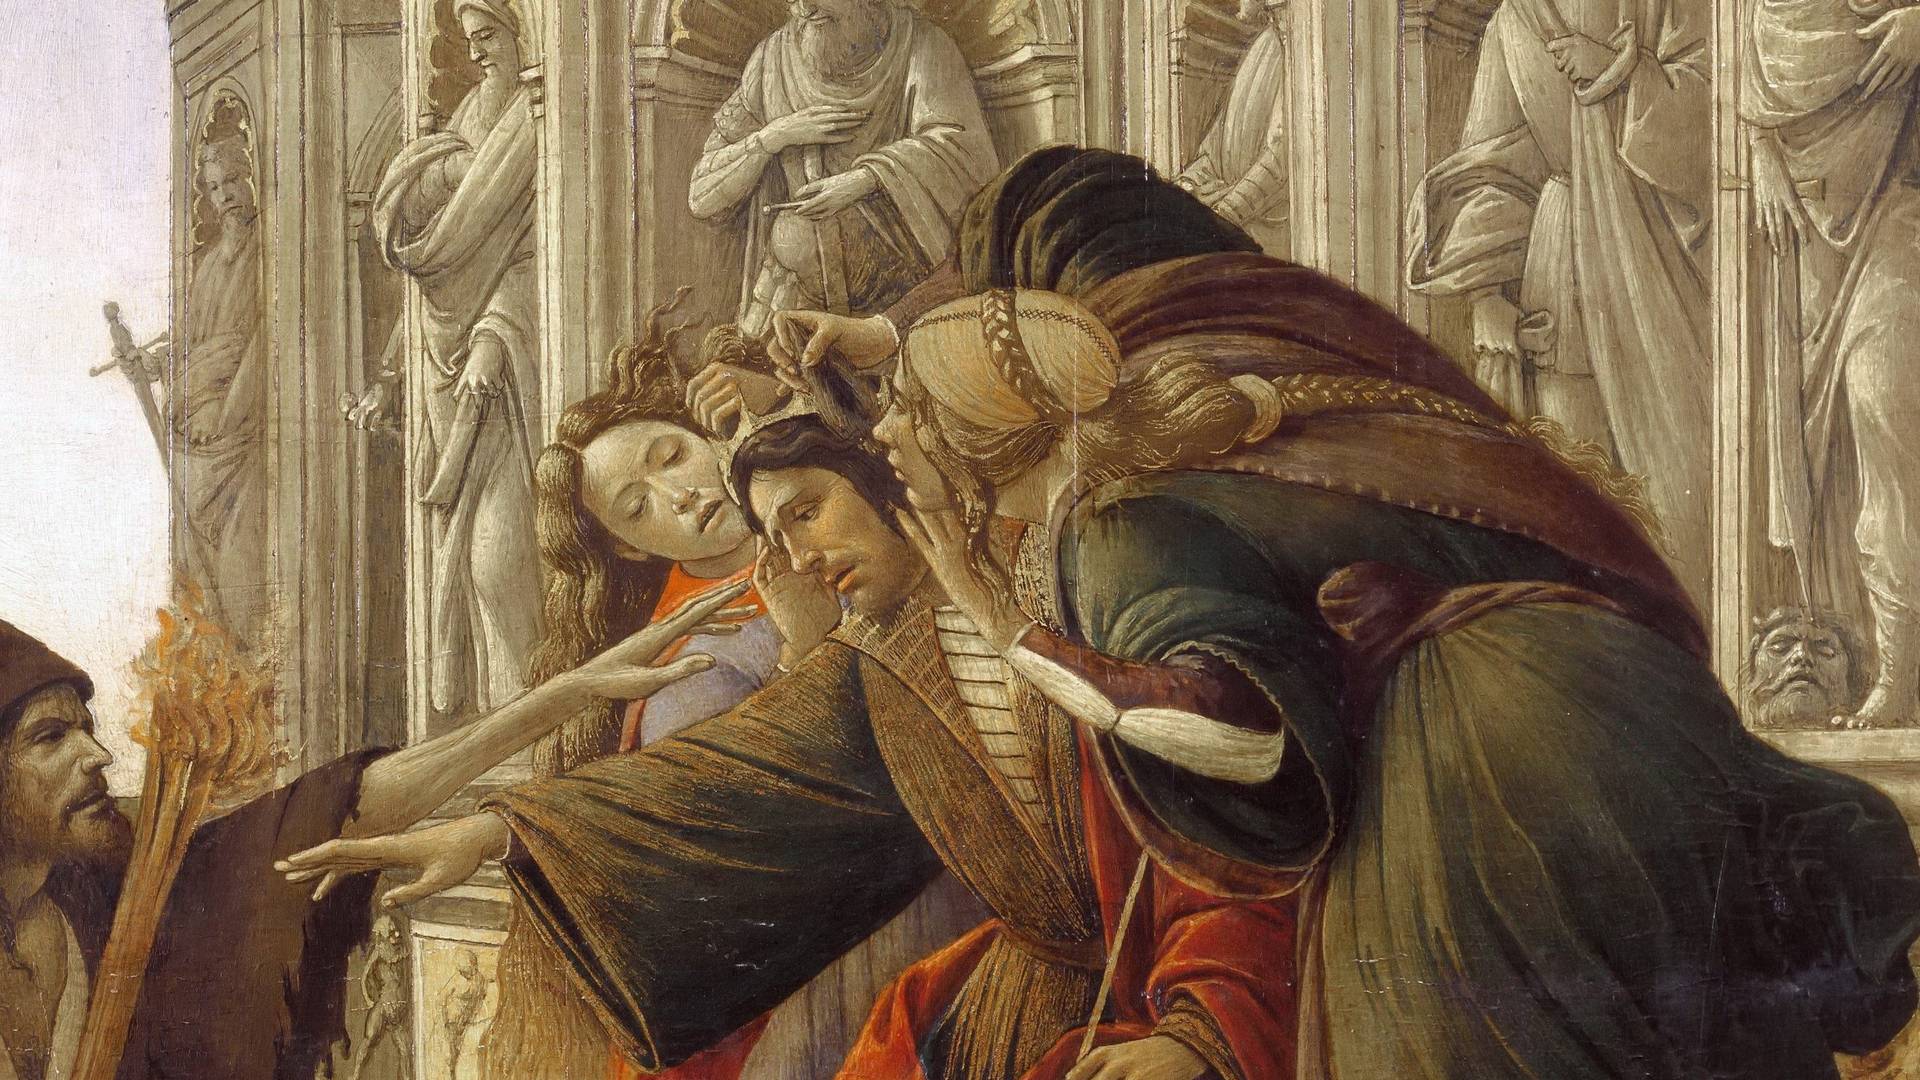 Сандро Боттичелли. Клевета (фрагмент «Царь Мидас на троне в окружении Подозрения и Невежества»). 1495